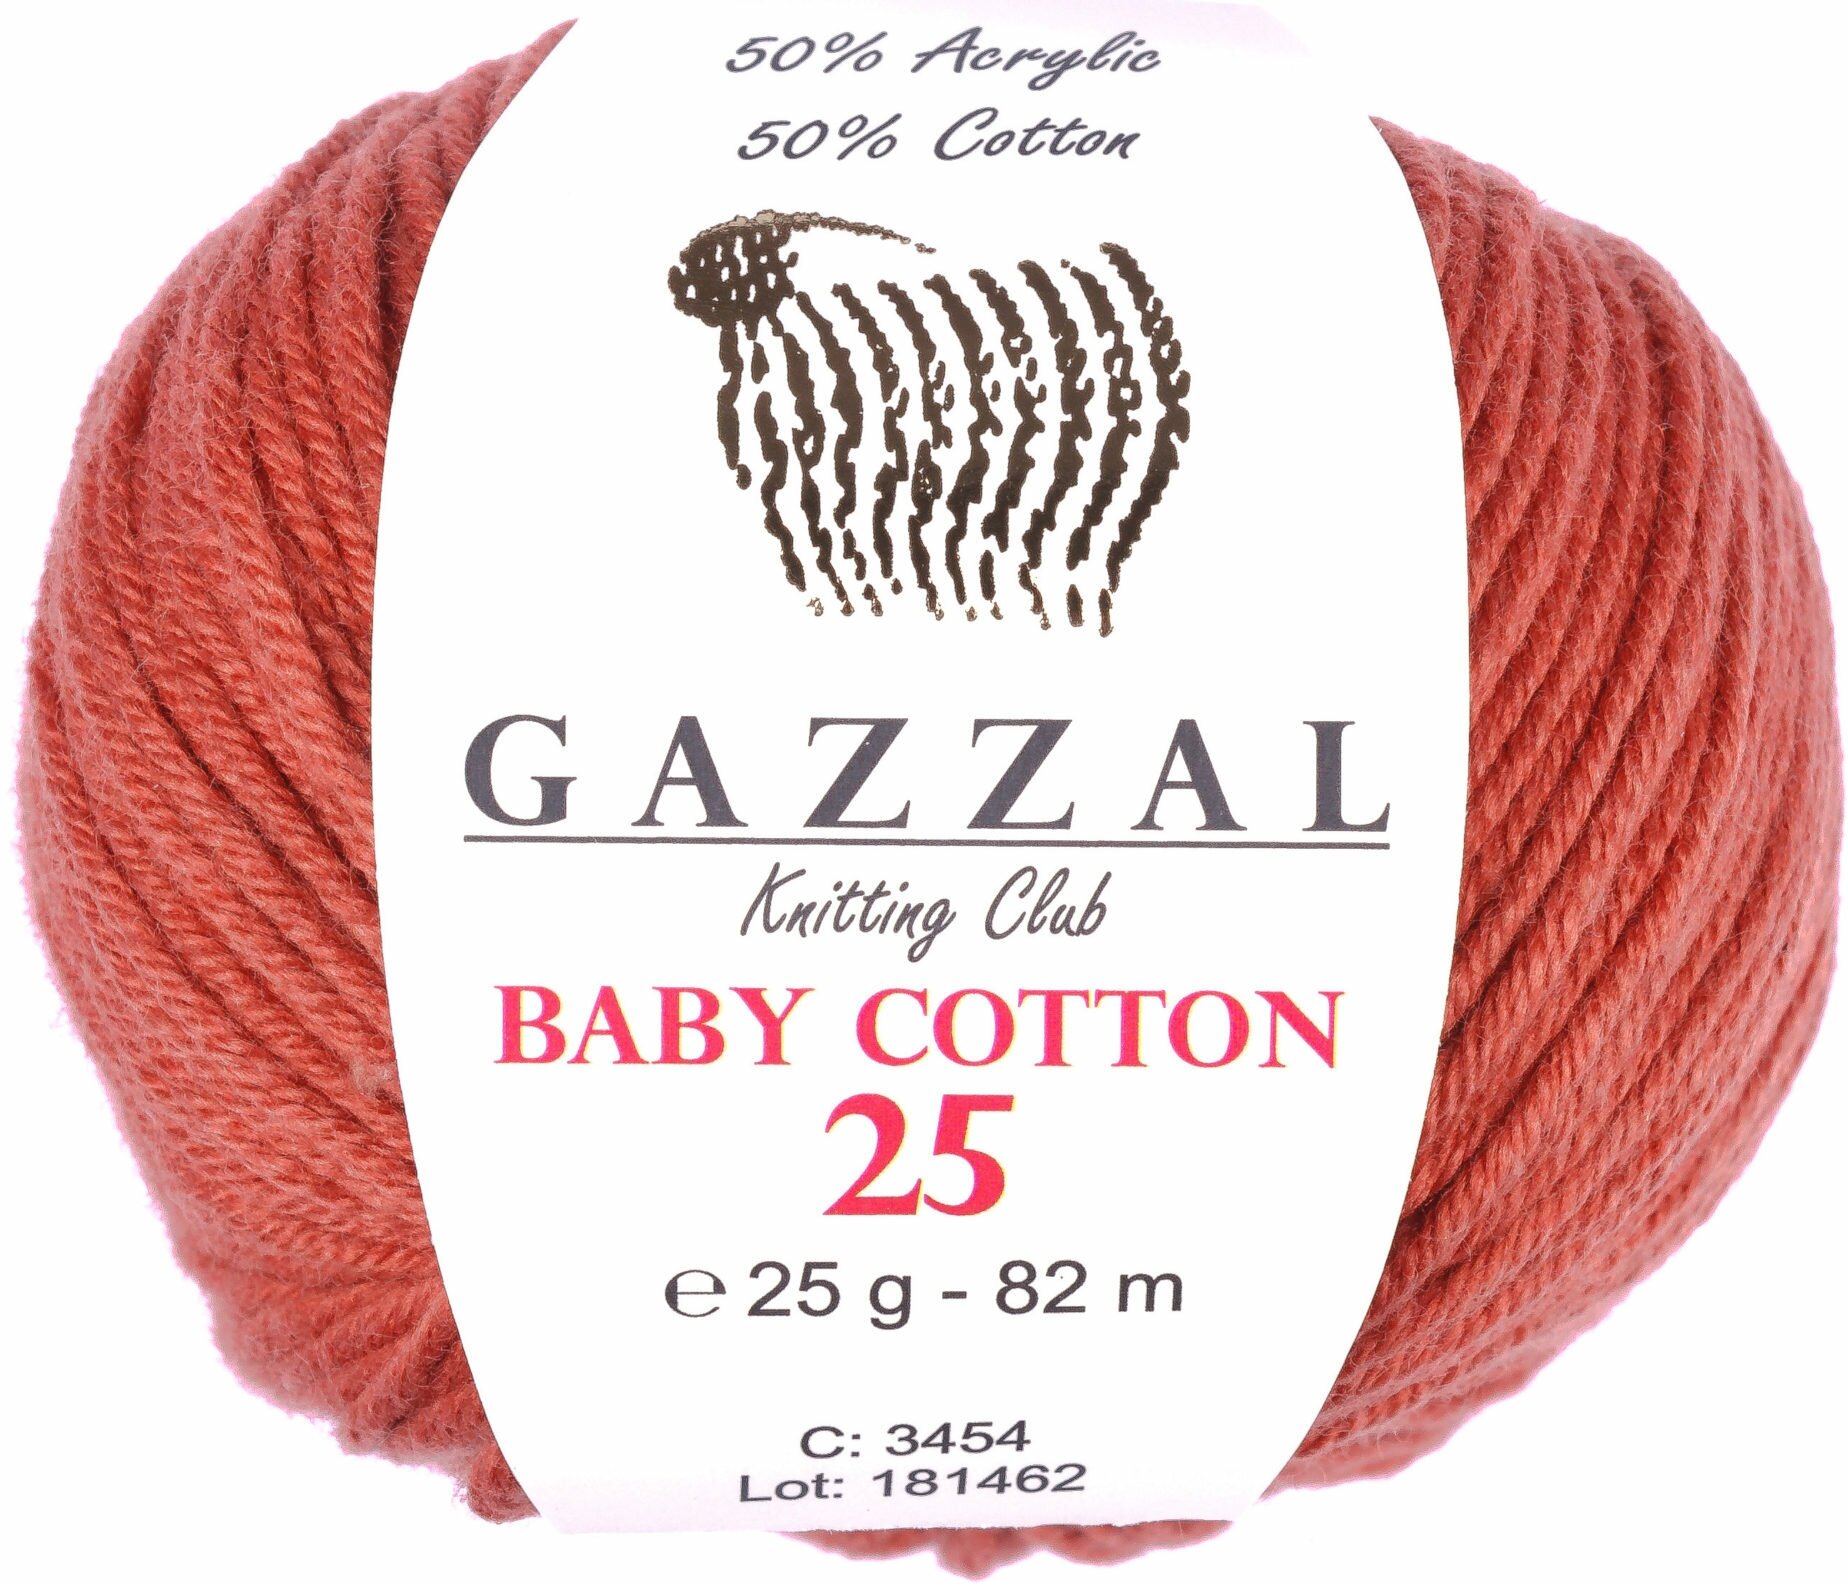 Пряжа Gazzal Baby Cotton 25 красная глина (3454), 50%хлопок/50%акрил, 82м, 25г, 1шт